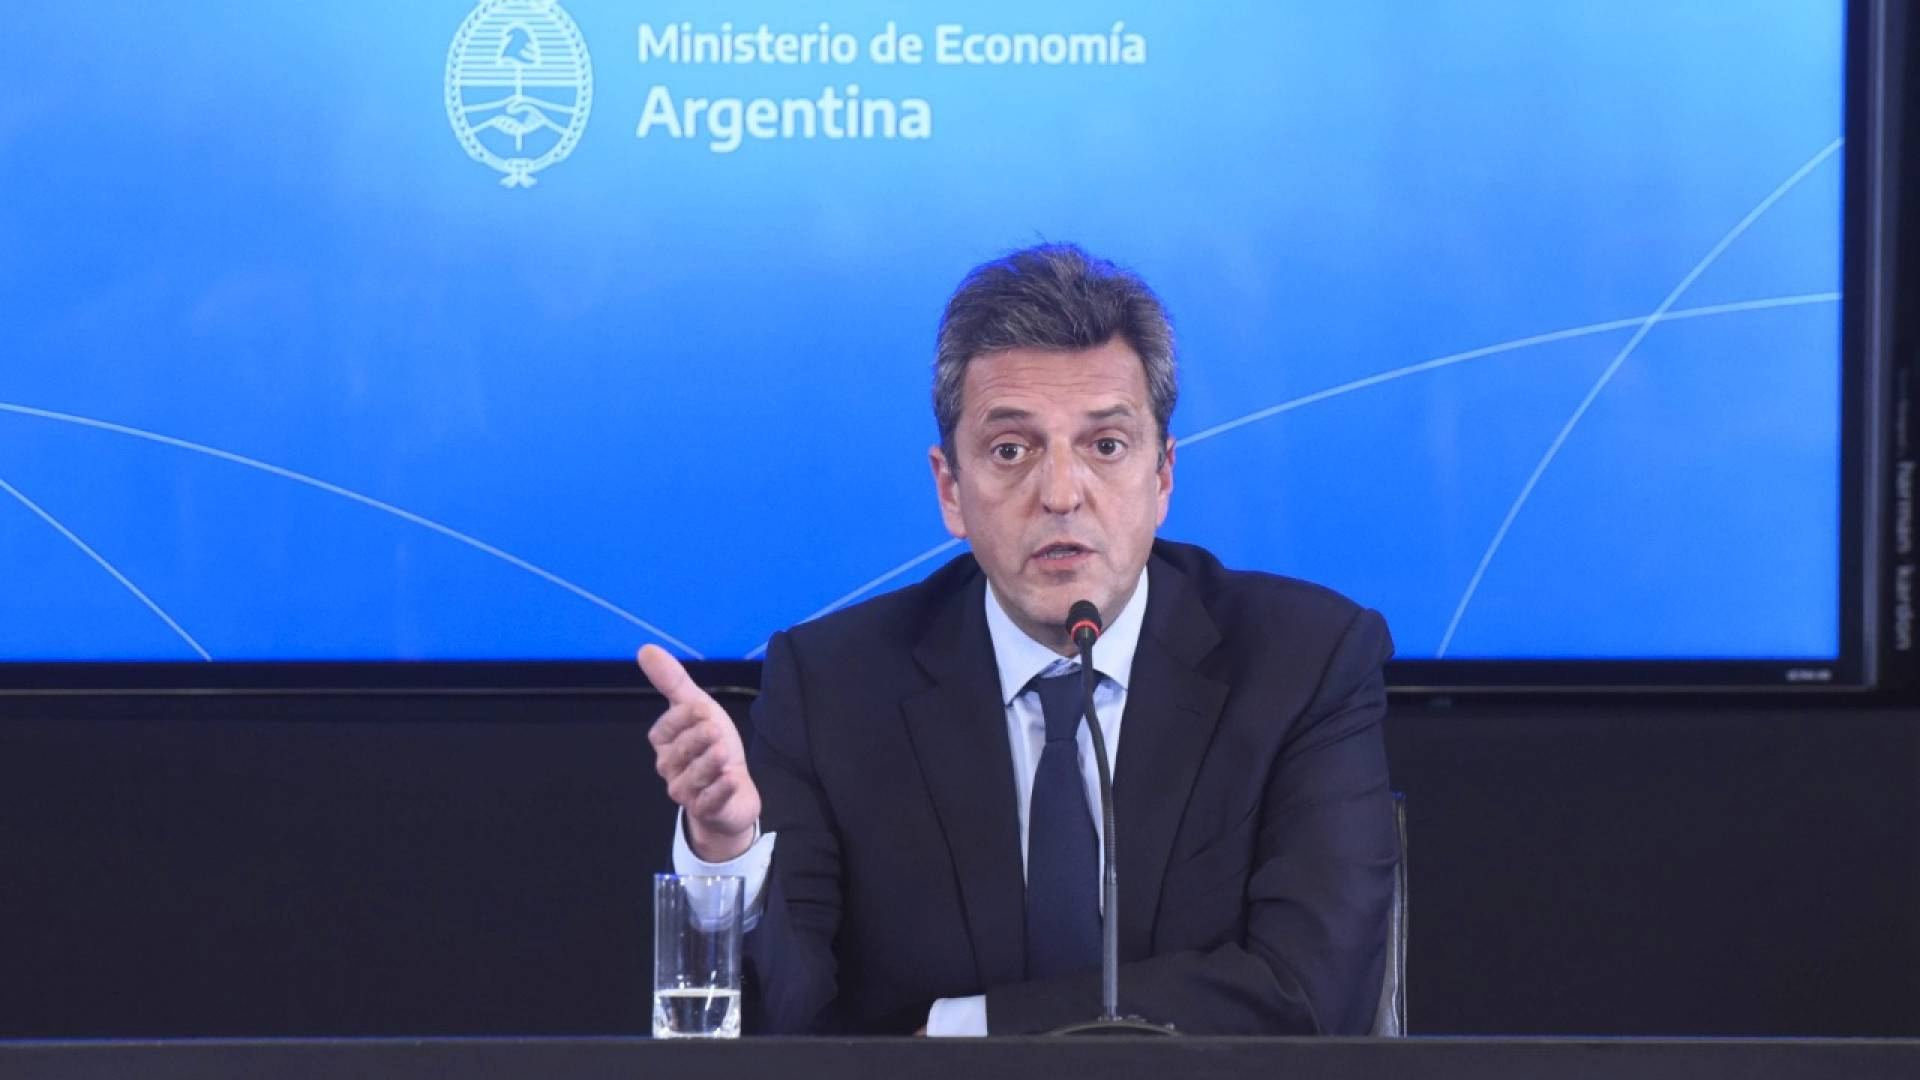 Бразилия и Аргентина планируют объявить о начале работы по созданию единой валюты